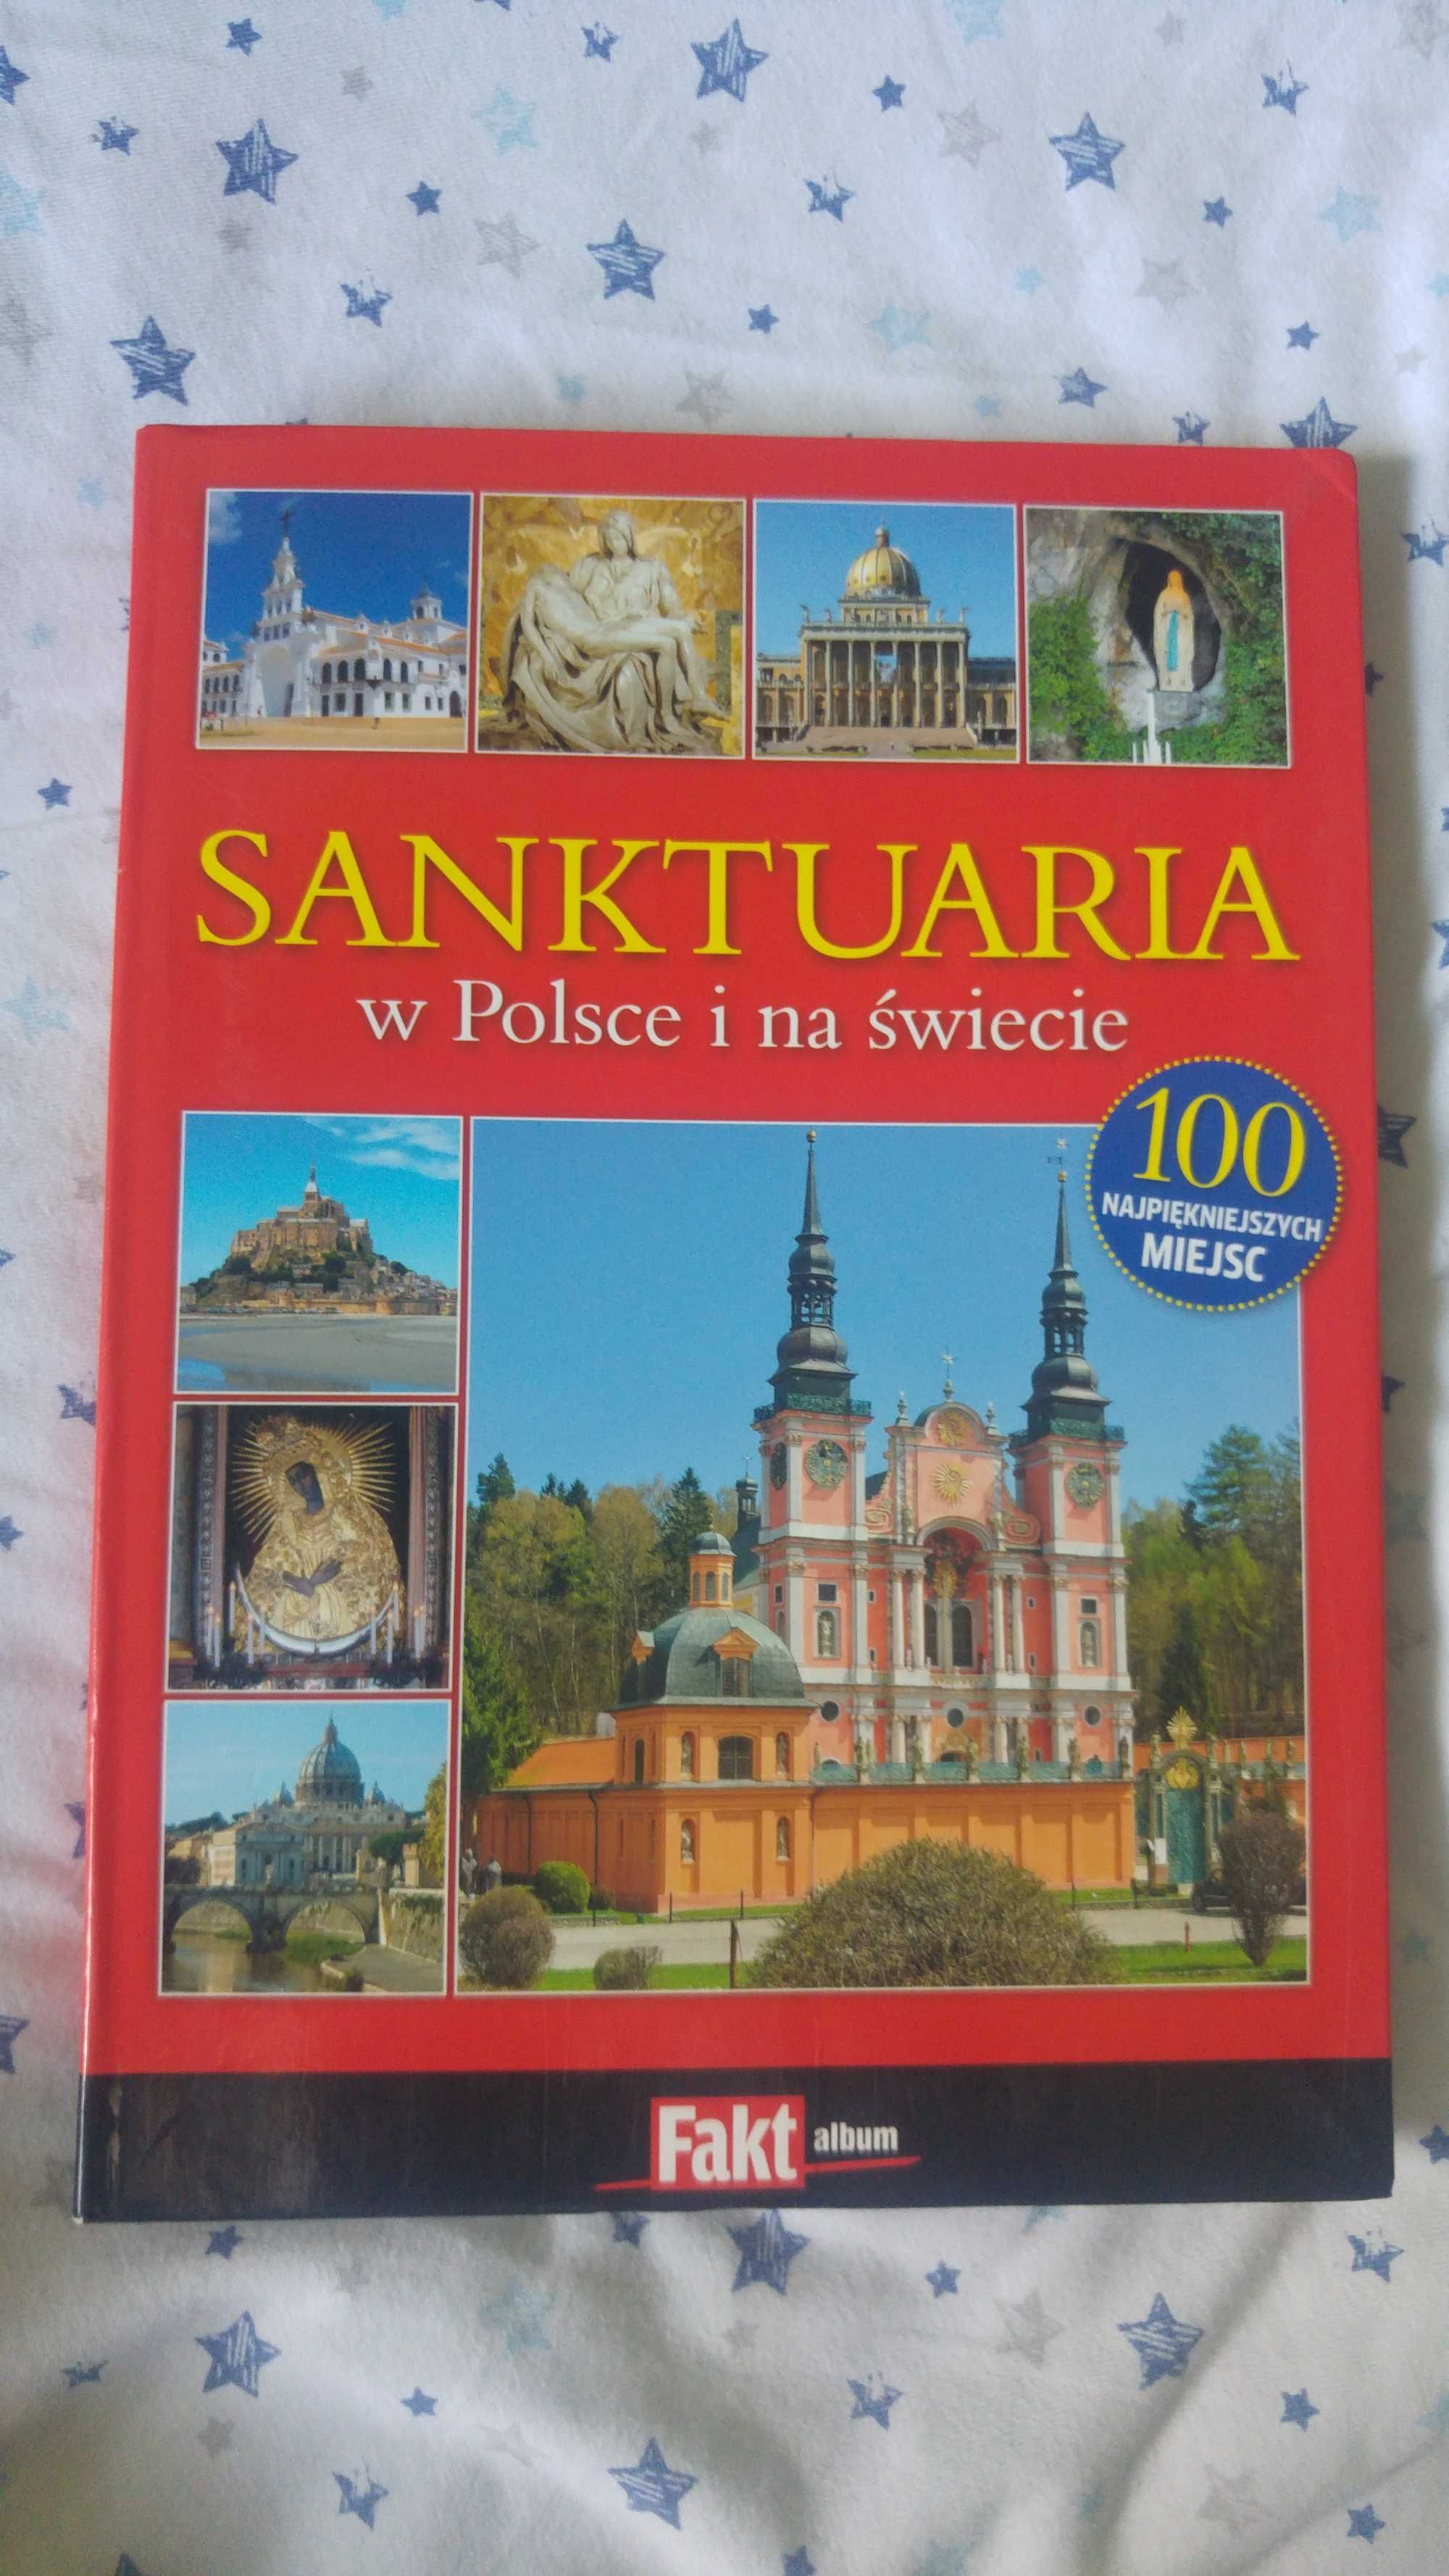 Sanktuaria w Polsce i na świecie, album